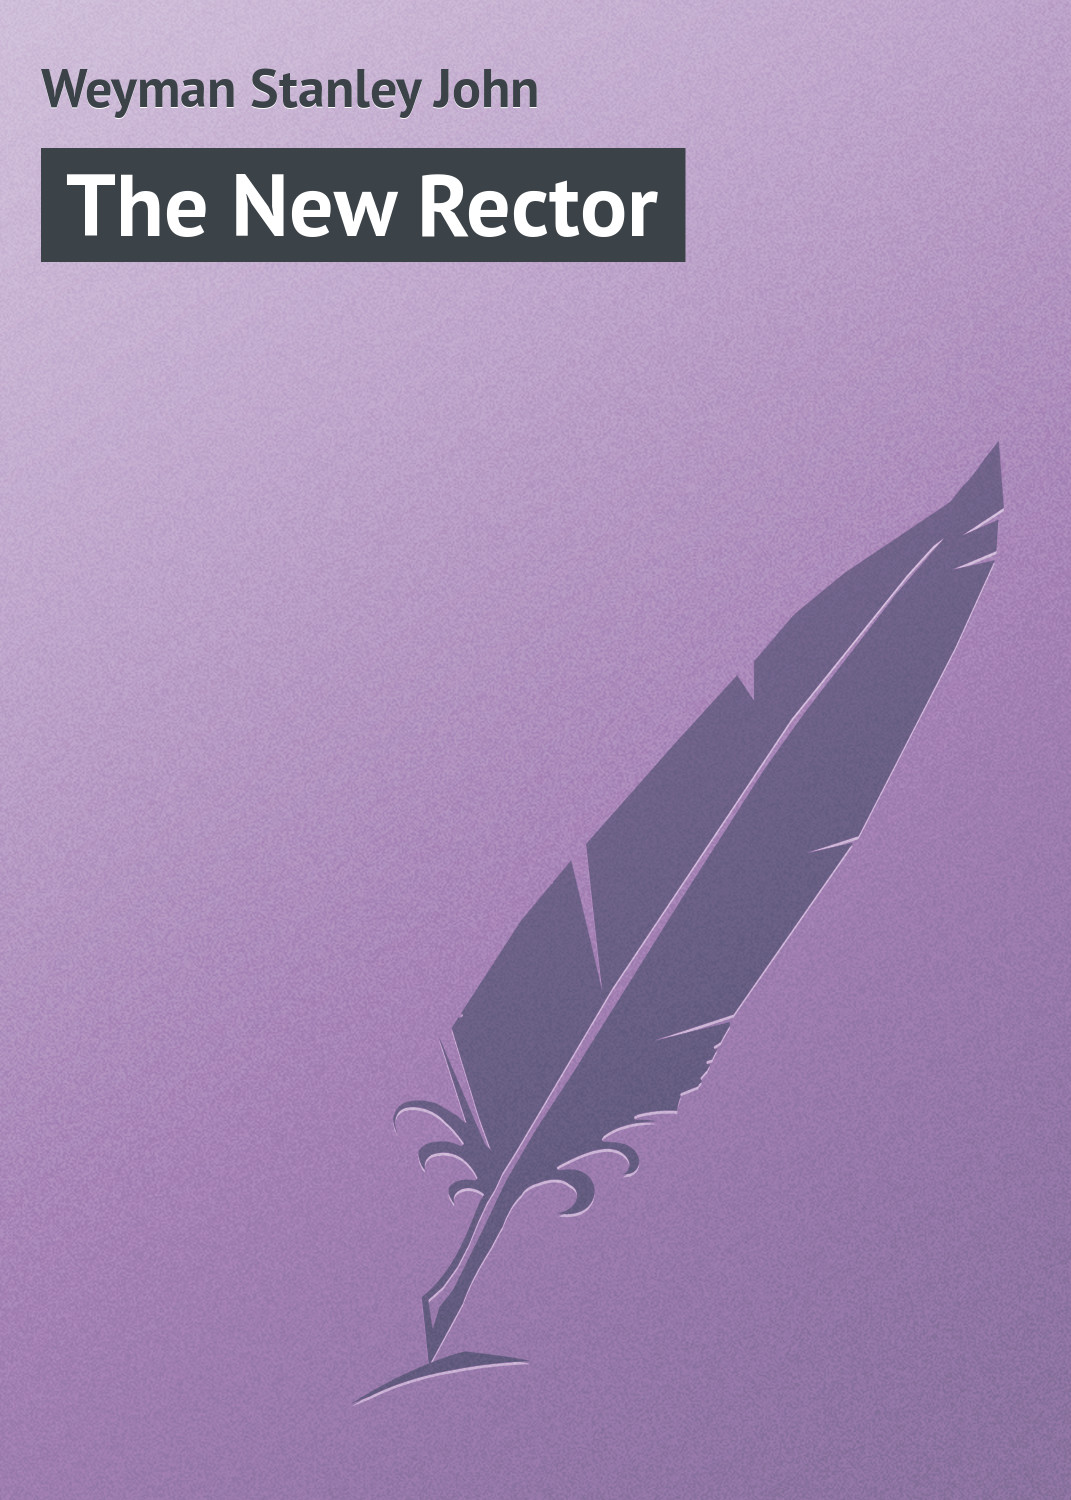 Книга The New Rector из серии , созданная Stanley Weyman, может относится к жанру Зарубежная классика, Иностранные языки. Стоимость электронной книги The New Rector с идентификатором 23158779 составляет 5.99 руб.